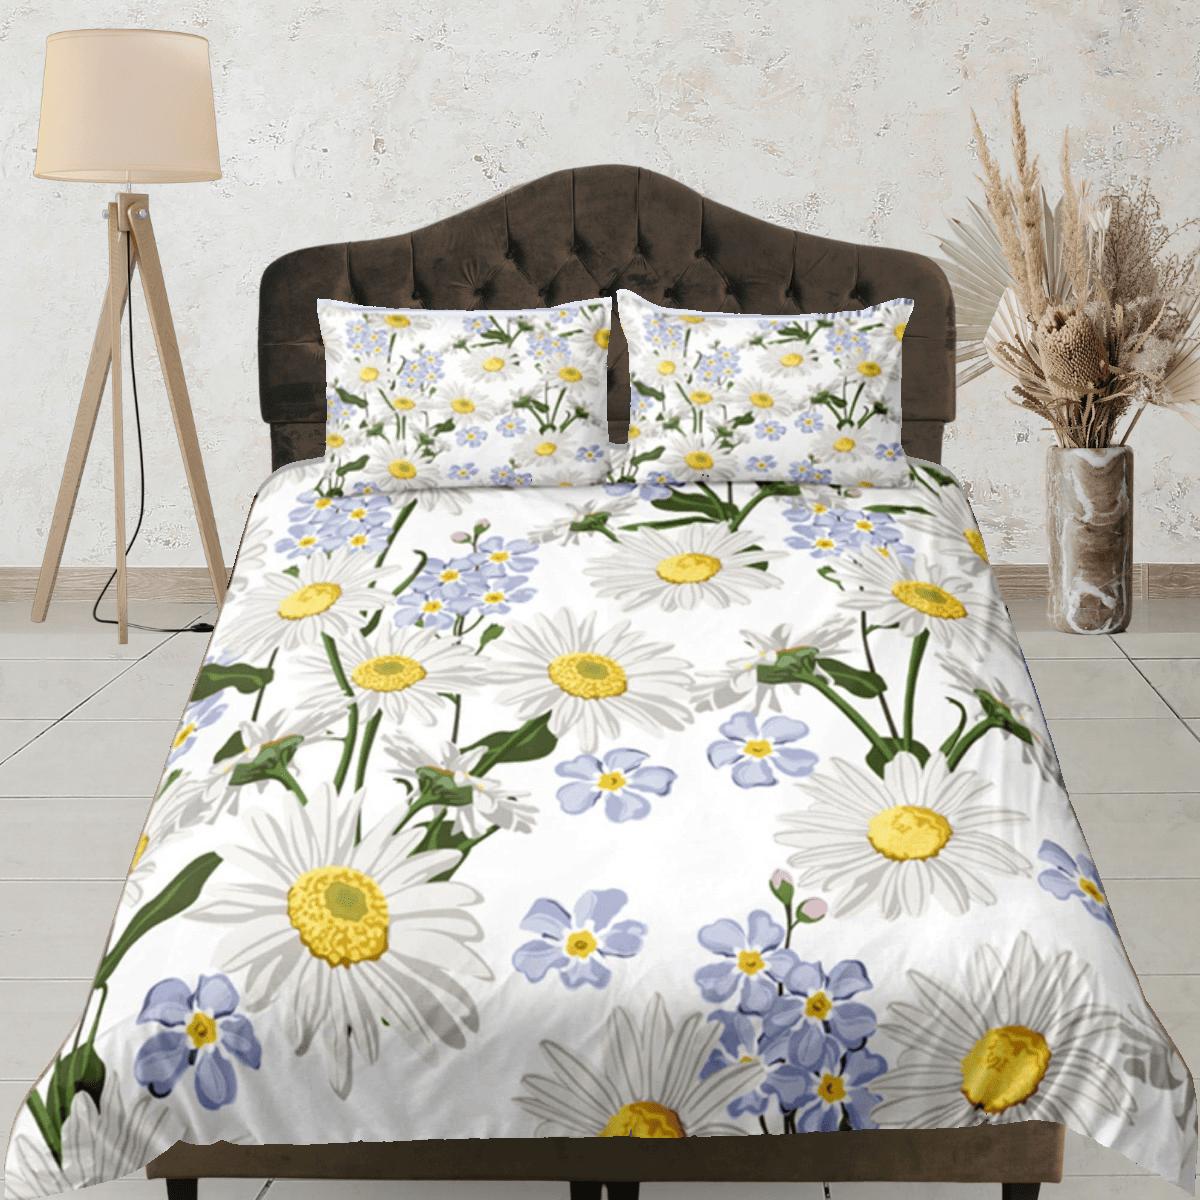 daintyduvet White Duvet Cover Set Botanical Bedspread Dorm Bedding Set Daisy Bedding Single